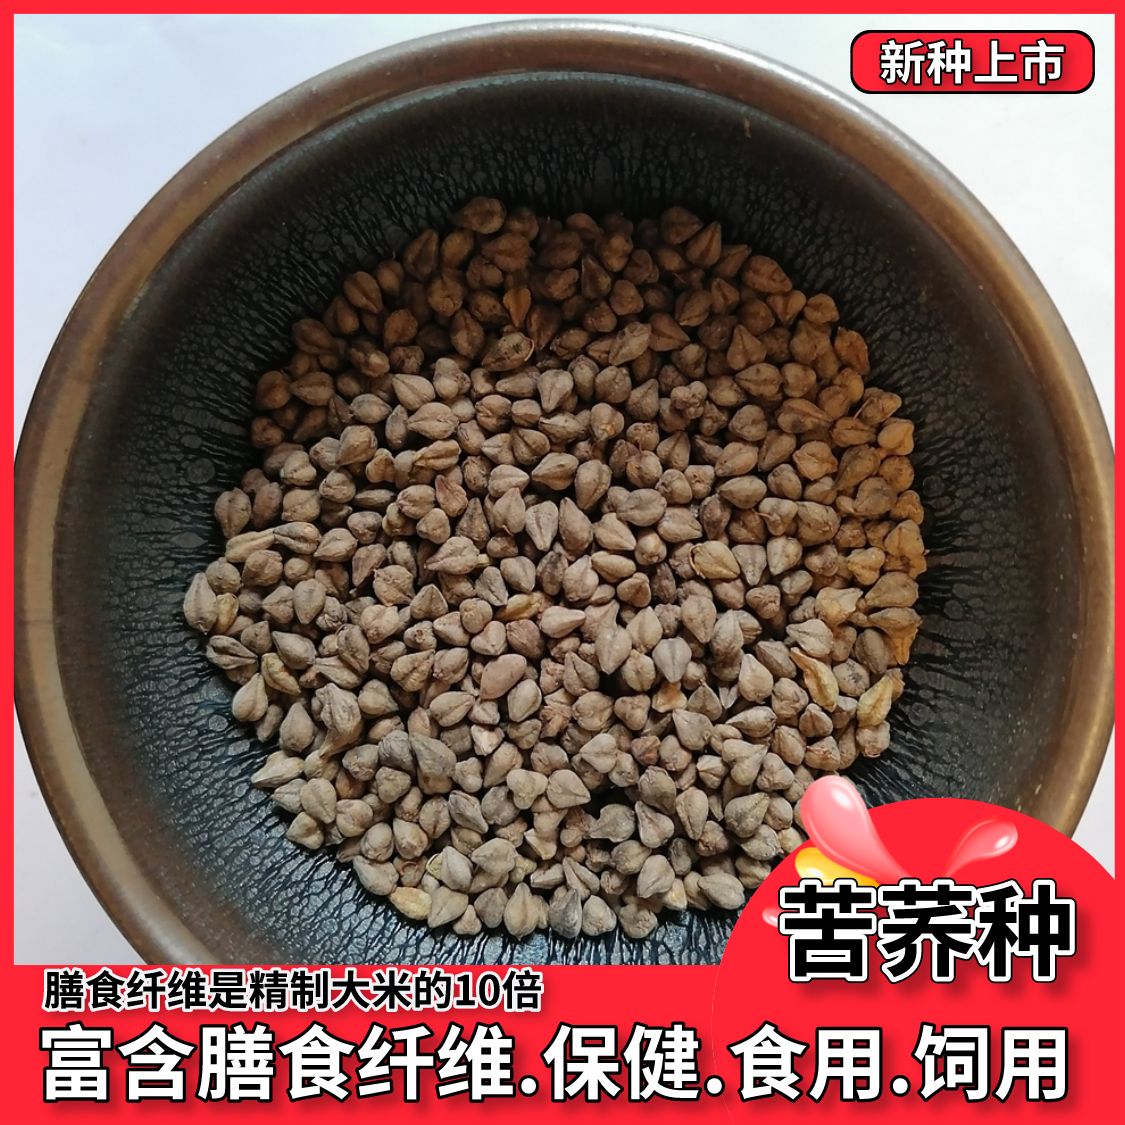 沭阳县荞麦种子优质苦荞麦甜荞麦蜜源荞麦黑荞麦红花荞麦种子包邮包发芽